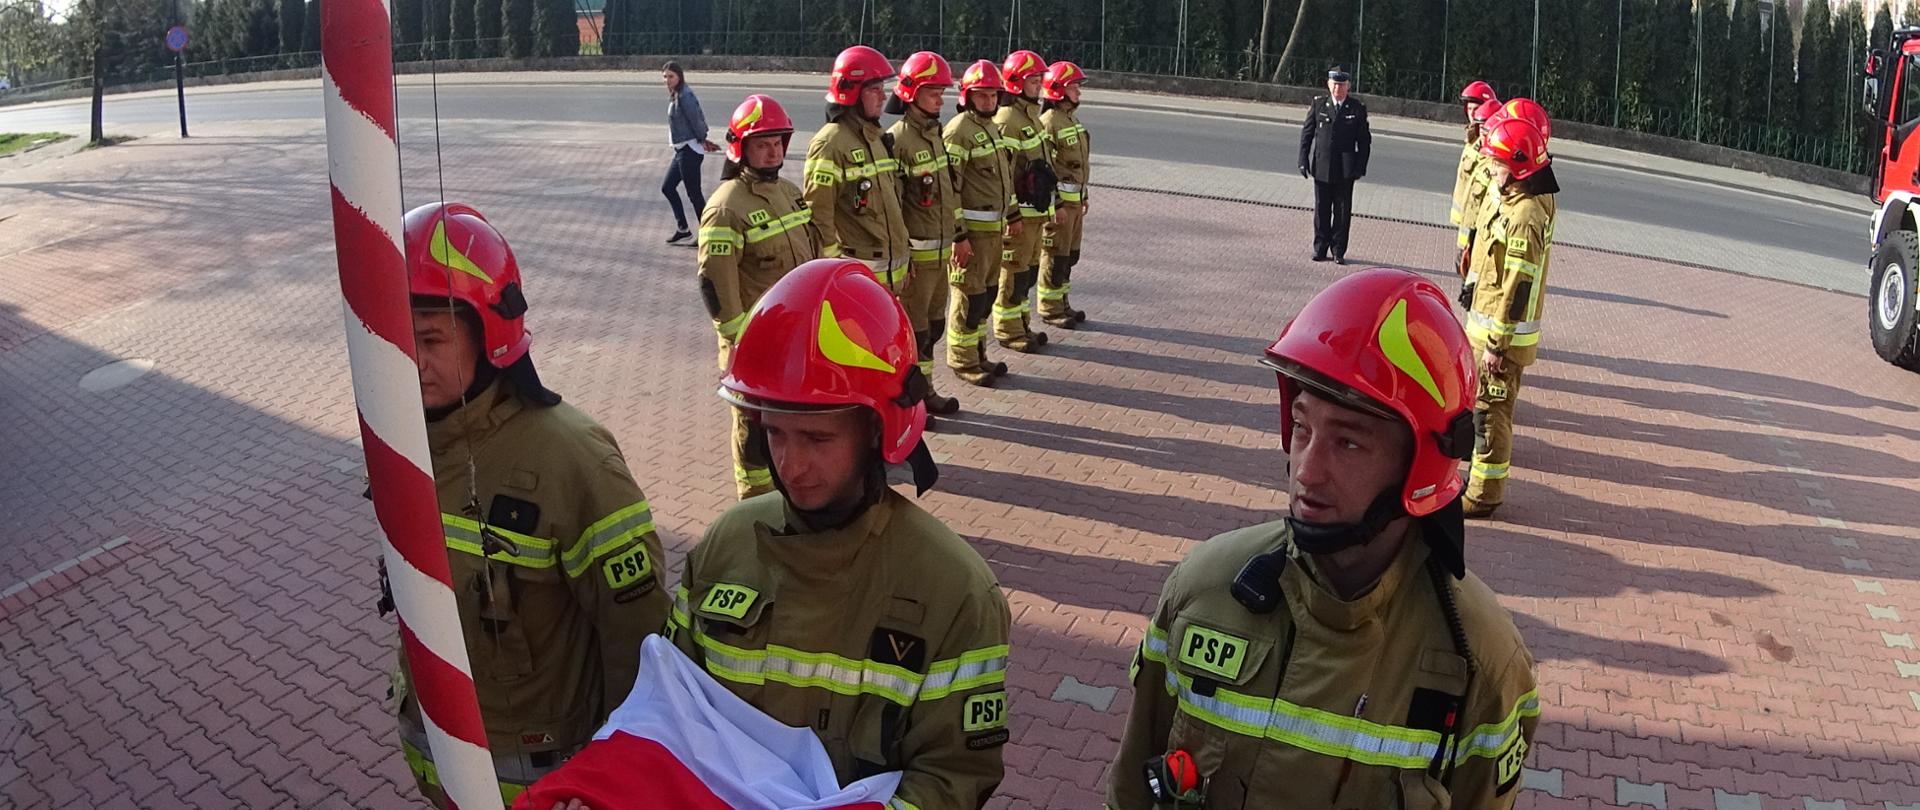 Strażacy w ubraniach specjalnych w trakcie uroczystego podnoszenia flagi na maszt.